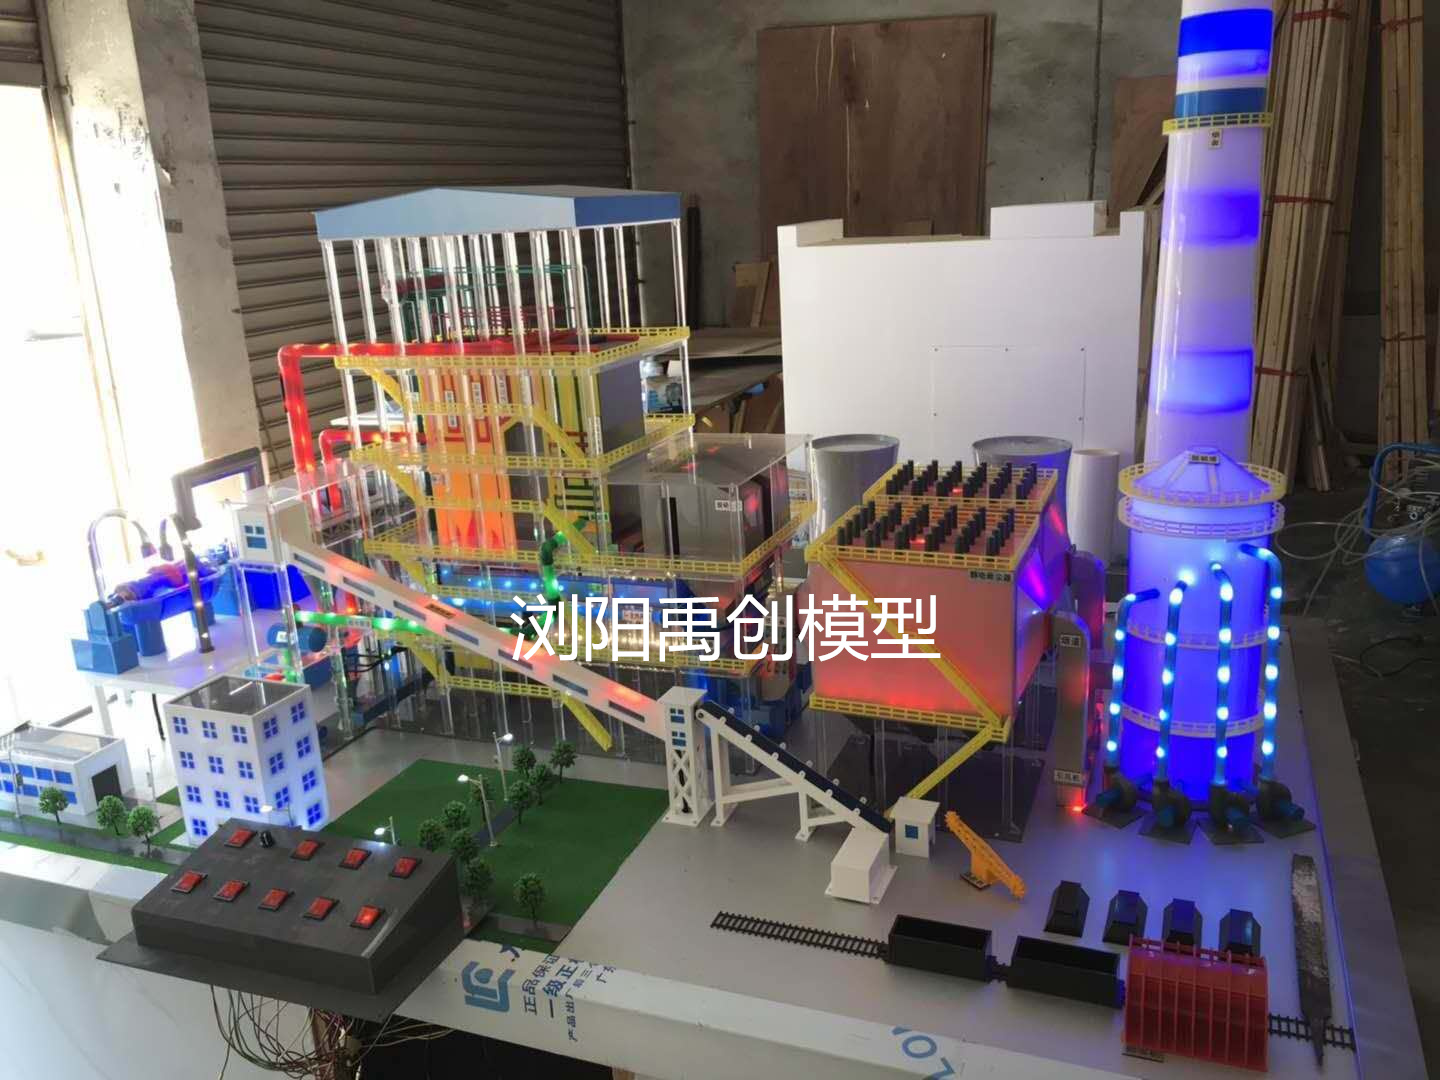 火力发电厂工业锅炉模型  火力发电厂模型  禹创模型定制